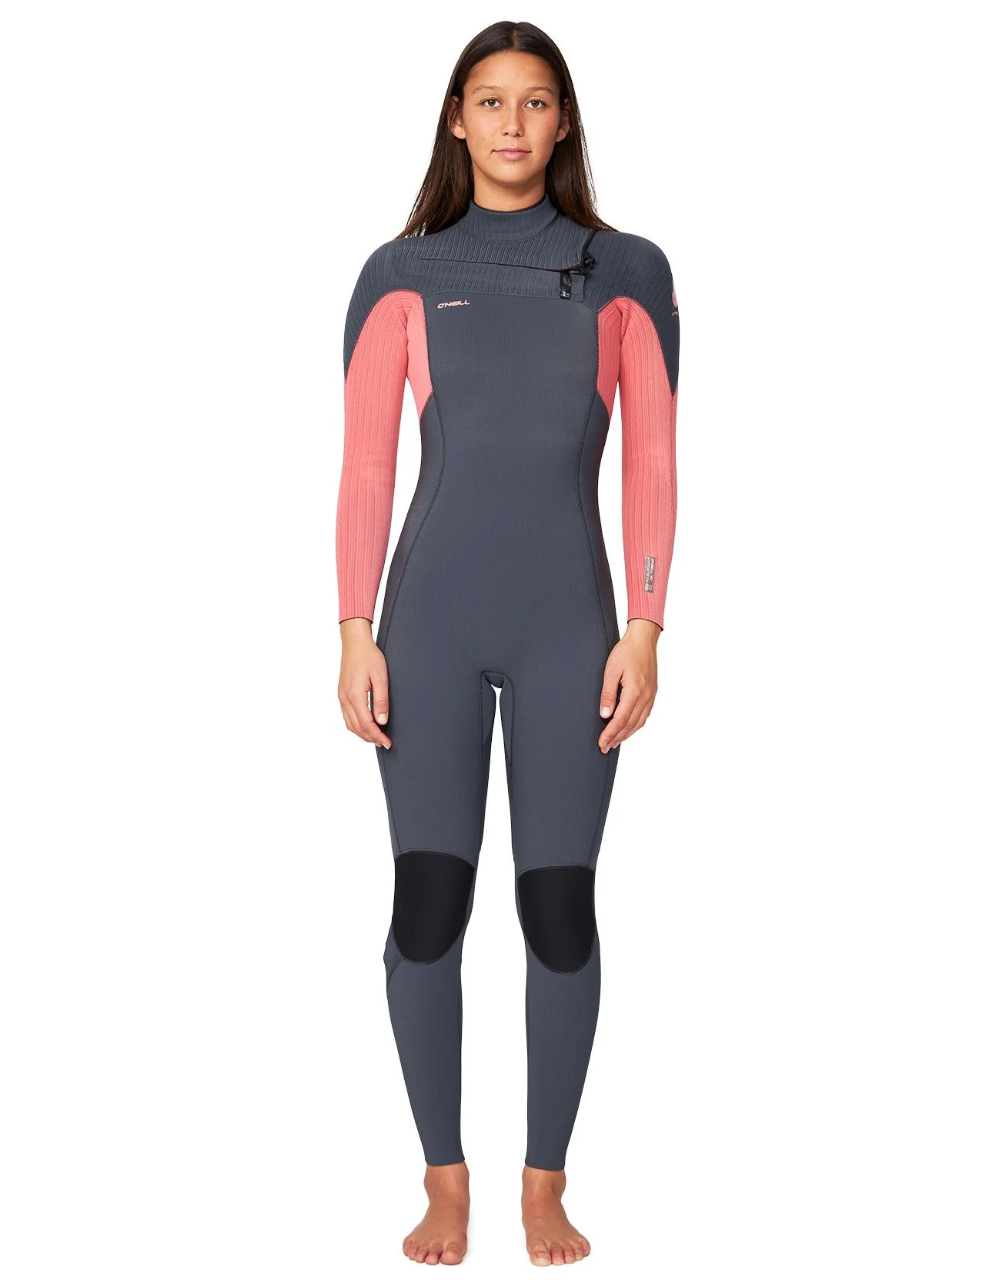 O'NEILL - Women's HyperFire 3/2mm Steamer Chest Zip Wetsuit - Coral